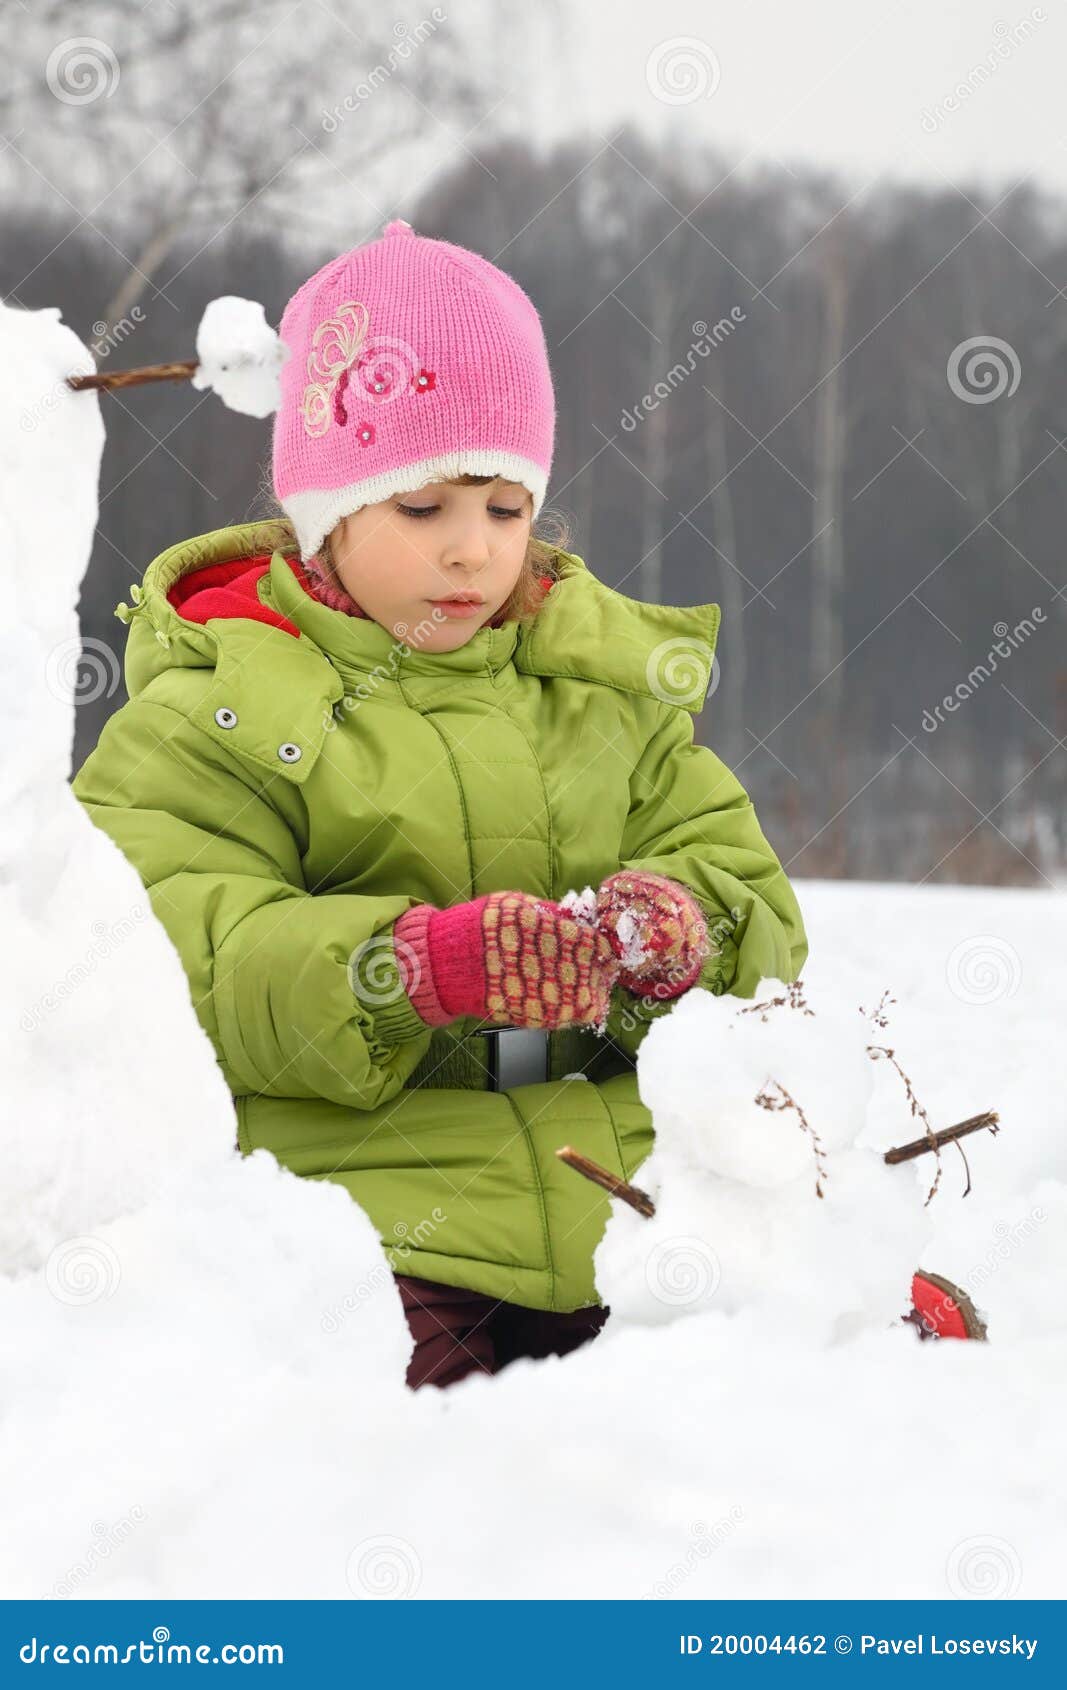 girl sculpt from snow much snowman